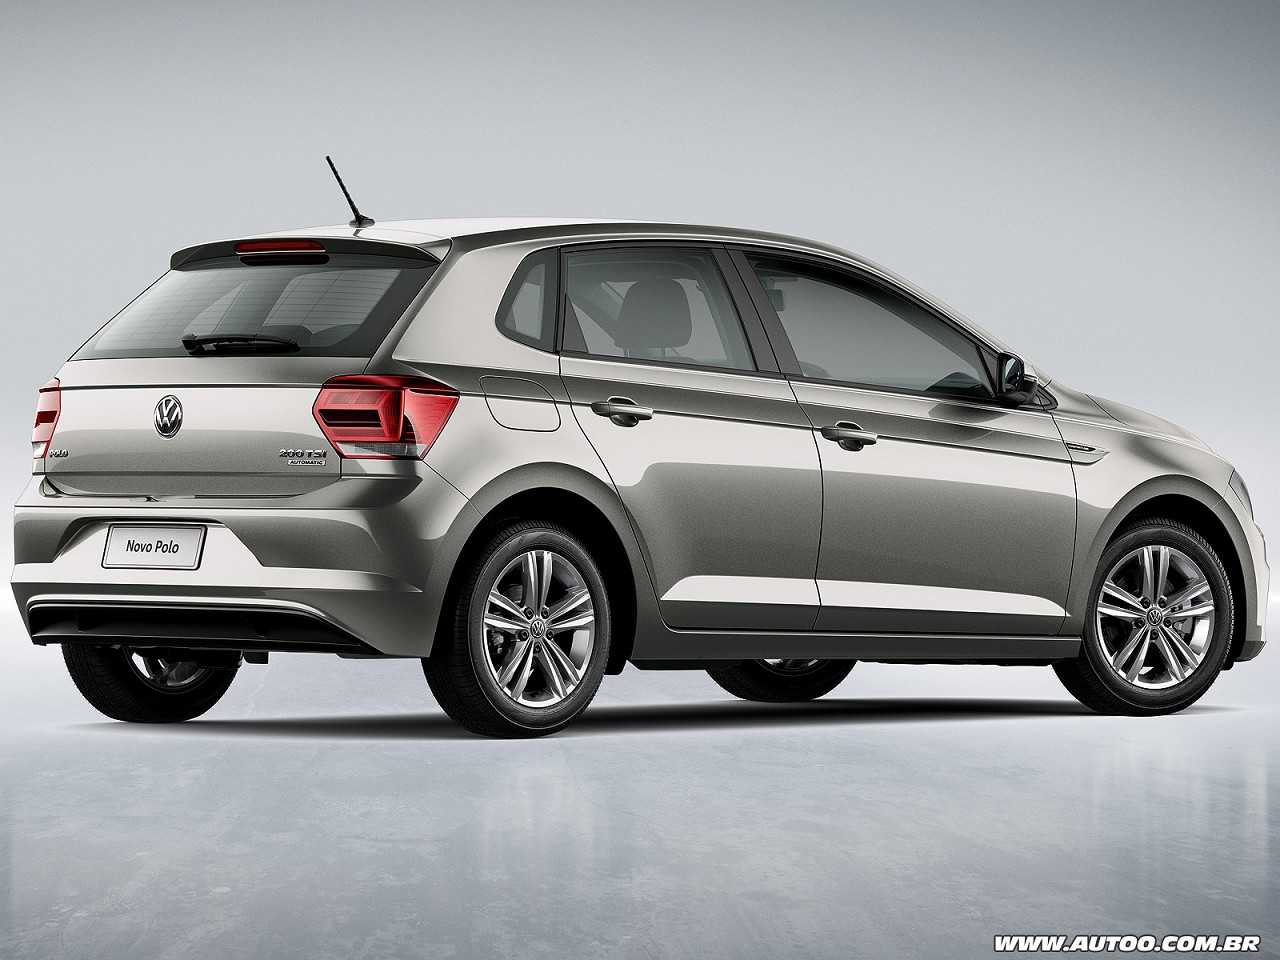 Melhor compra para PCD: VW Polo ou Toyota Yaris?